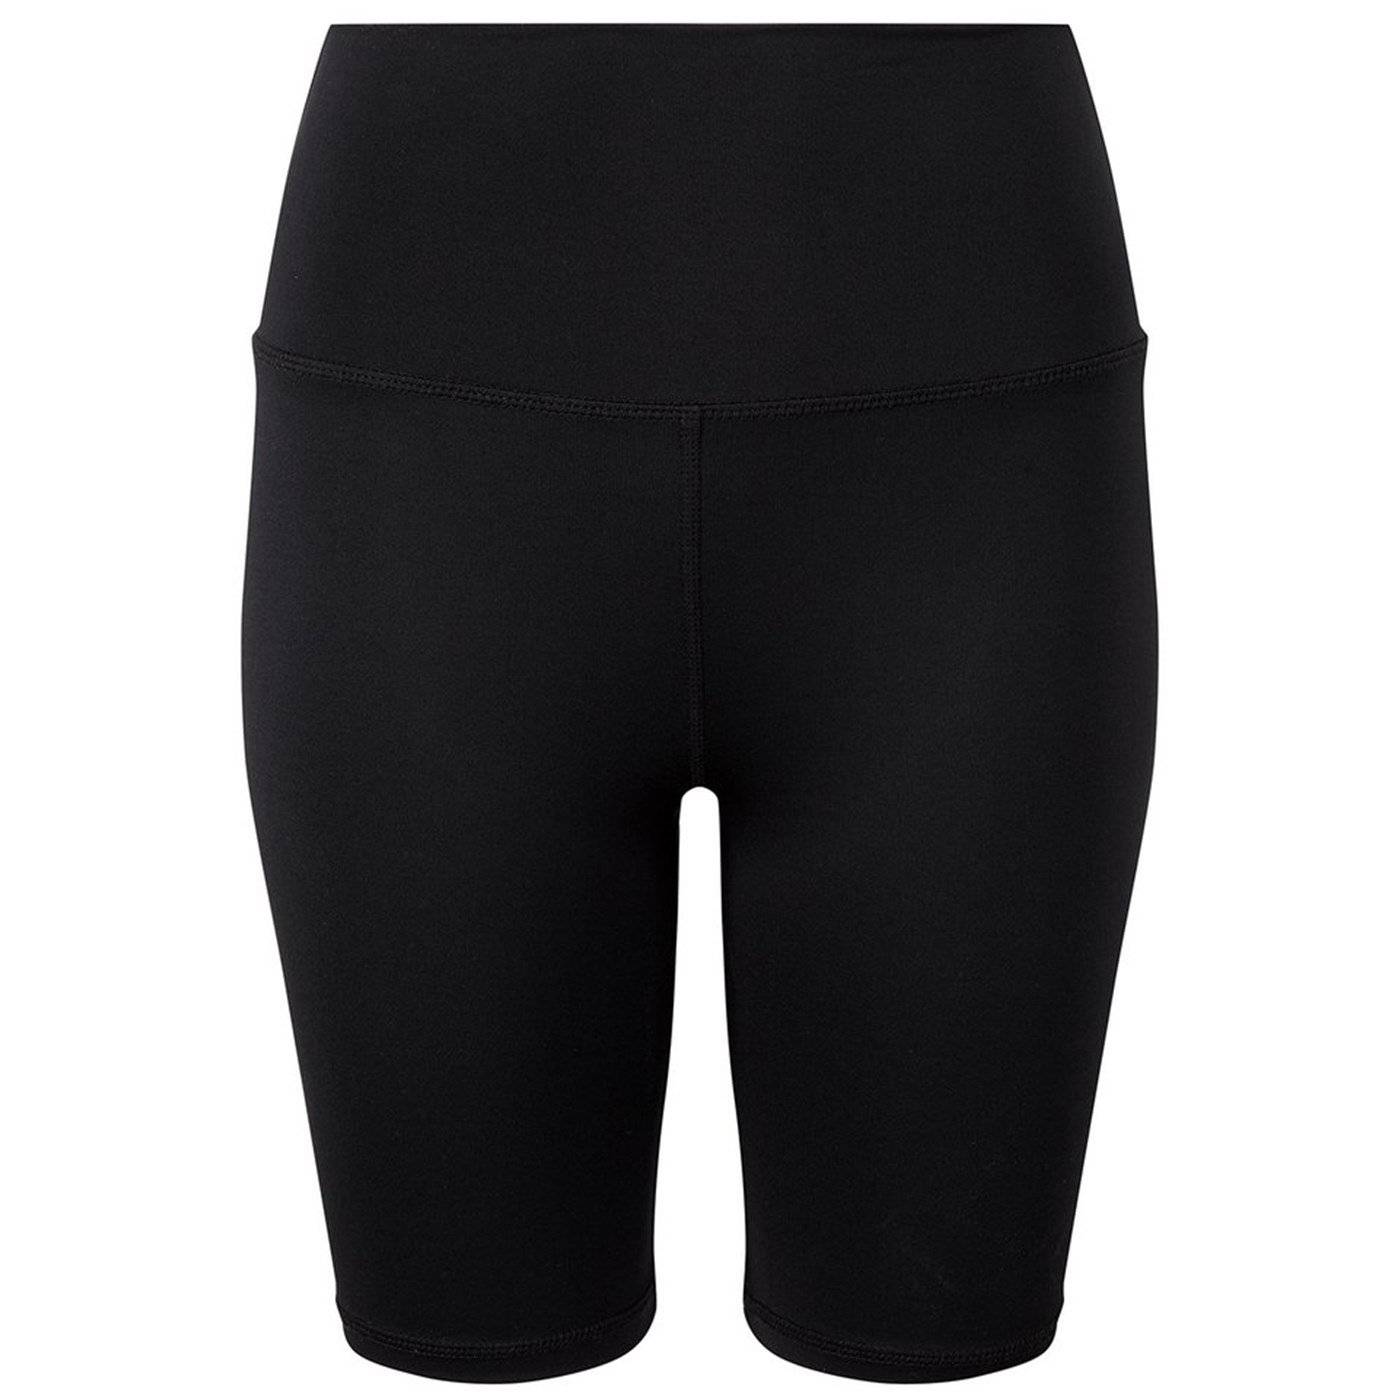 Women's TriDri® legging shorts TR046